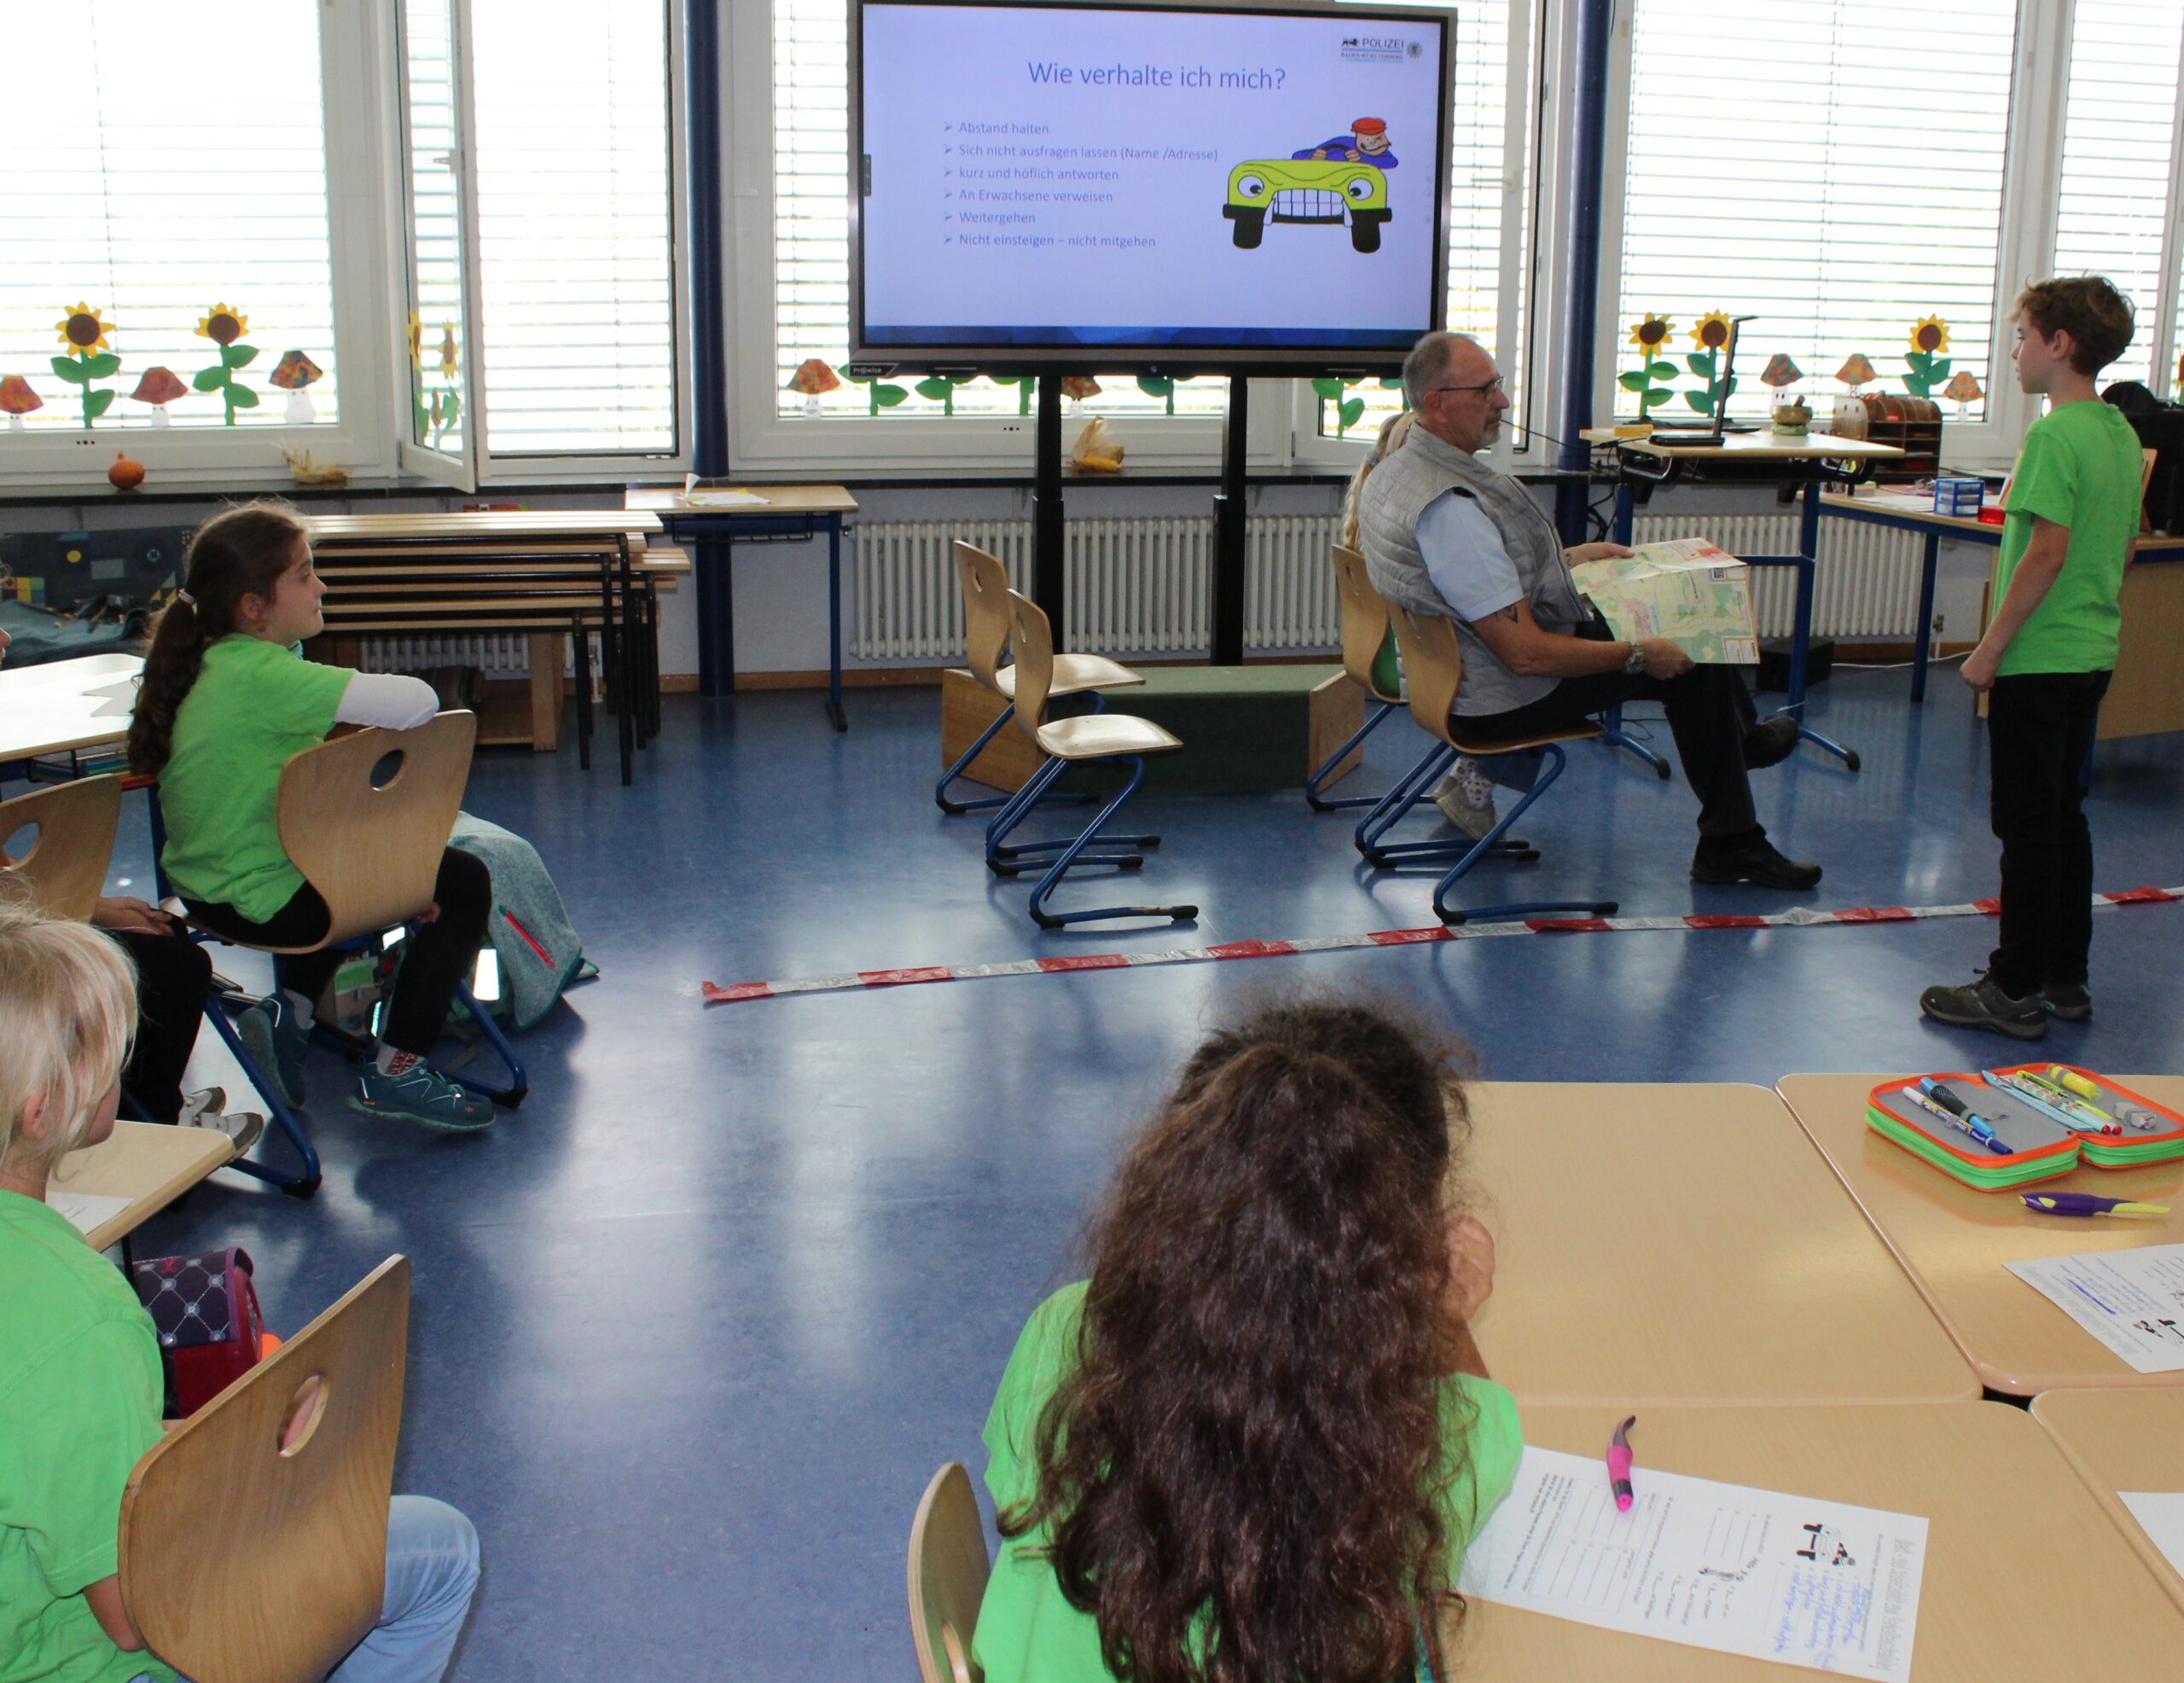 In einem Klassenzimmer ist eine Spielsituation aufgebaut, die ein Auto darstellt, dessen Beifahrer ein Kind auf der gespielten Straße anspricht.